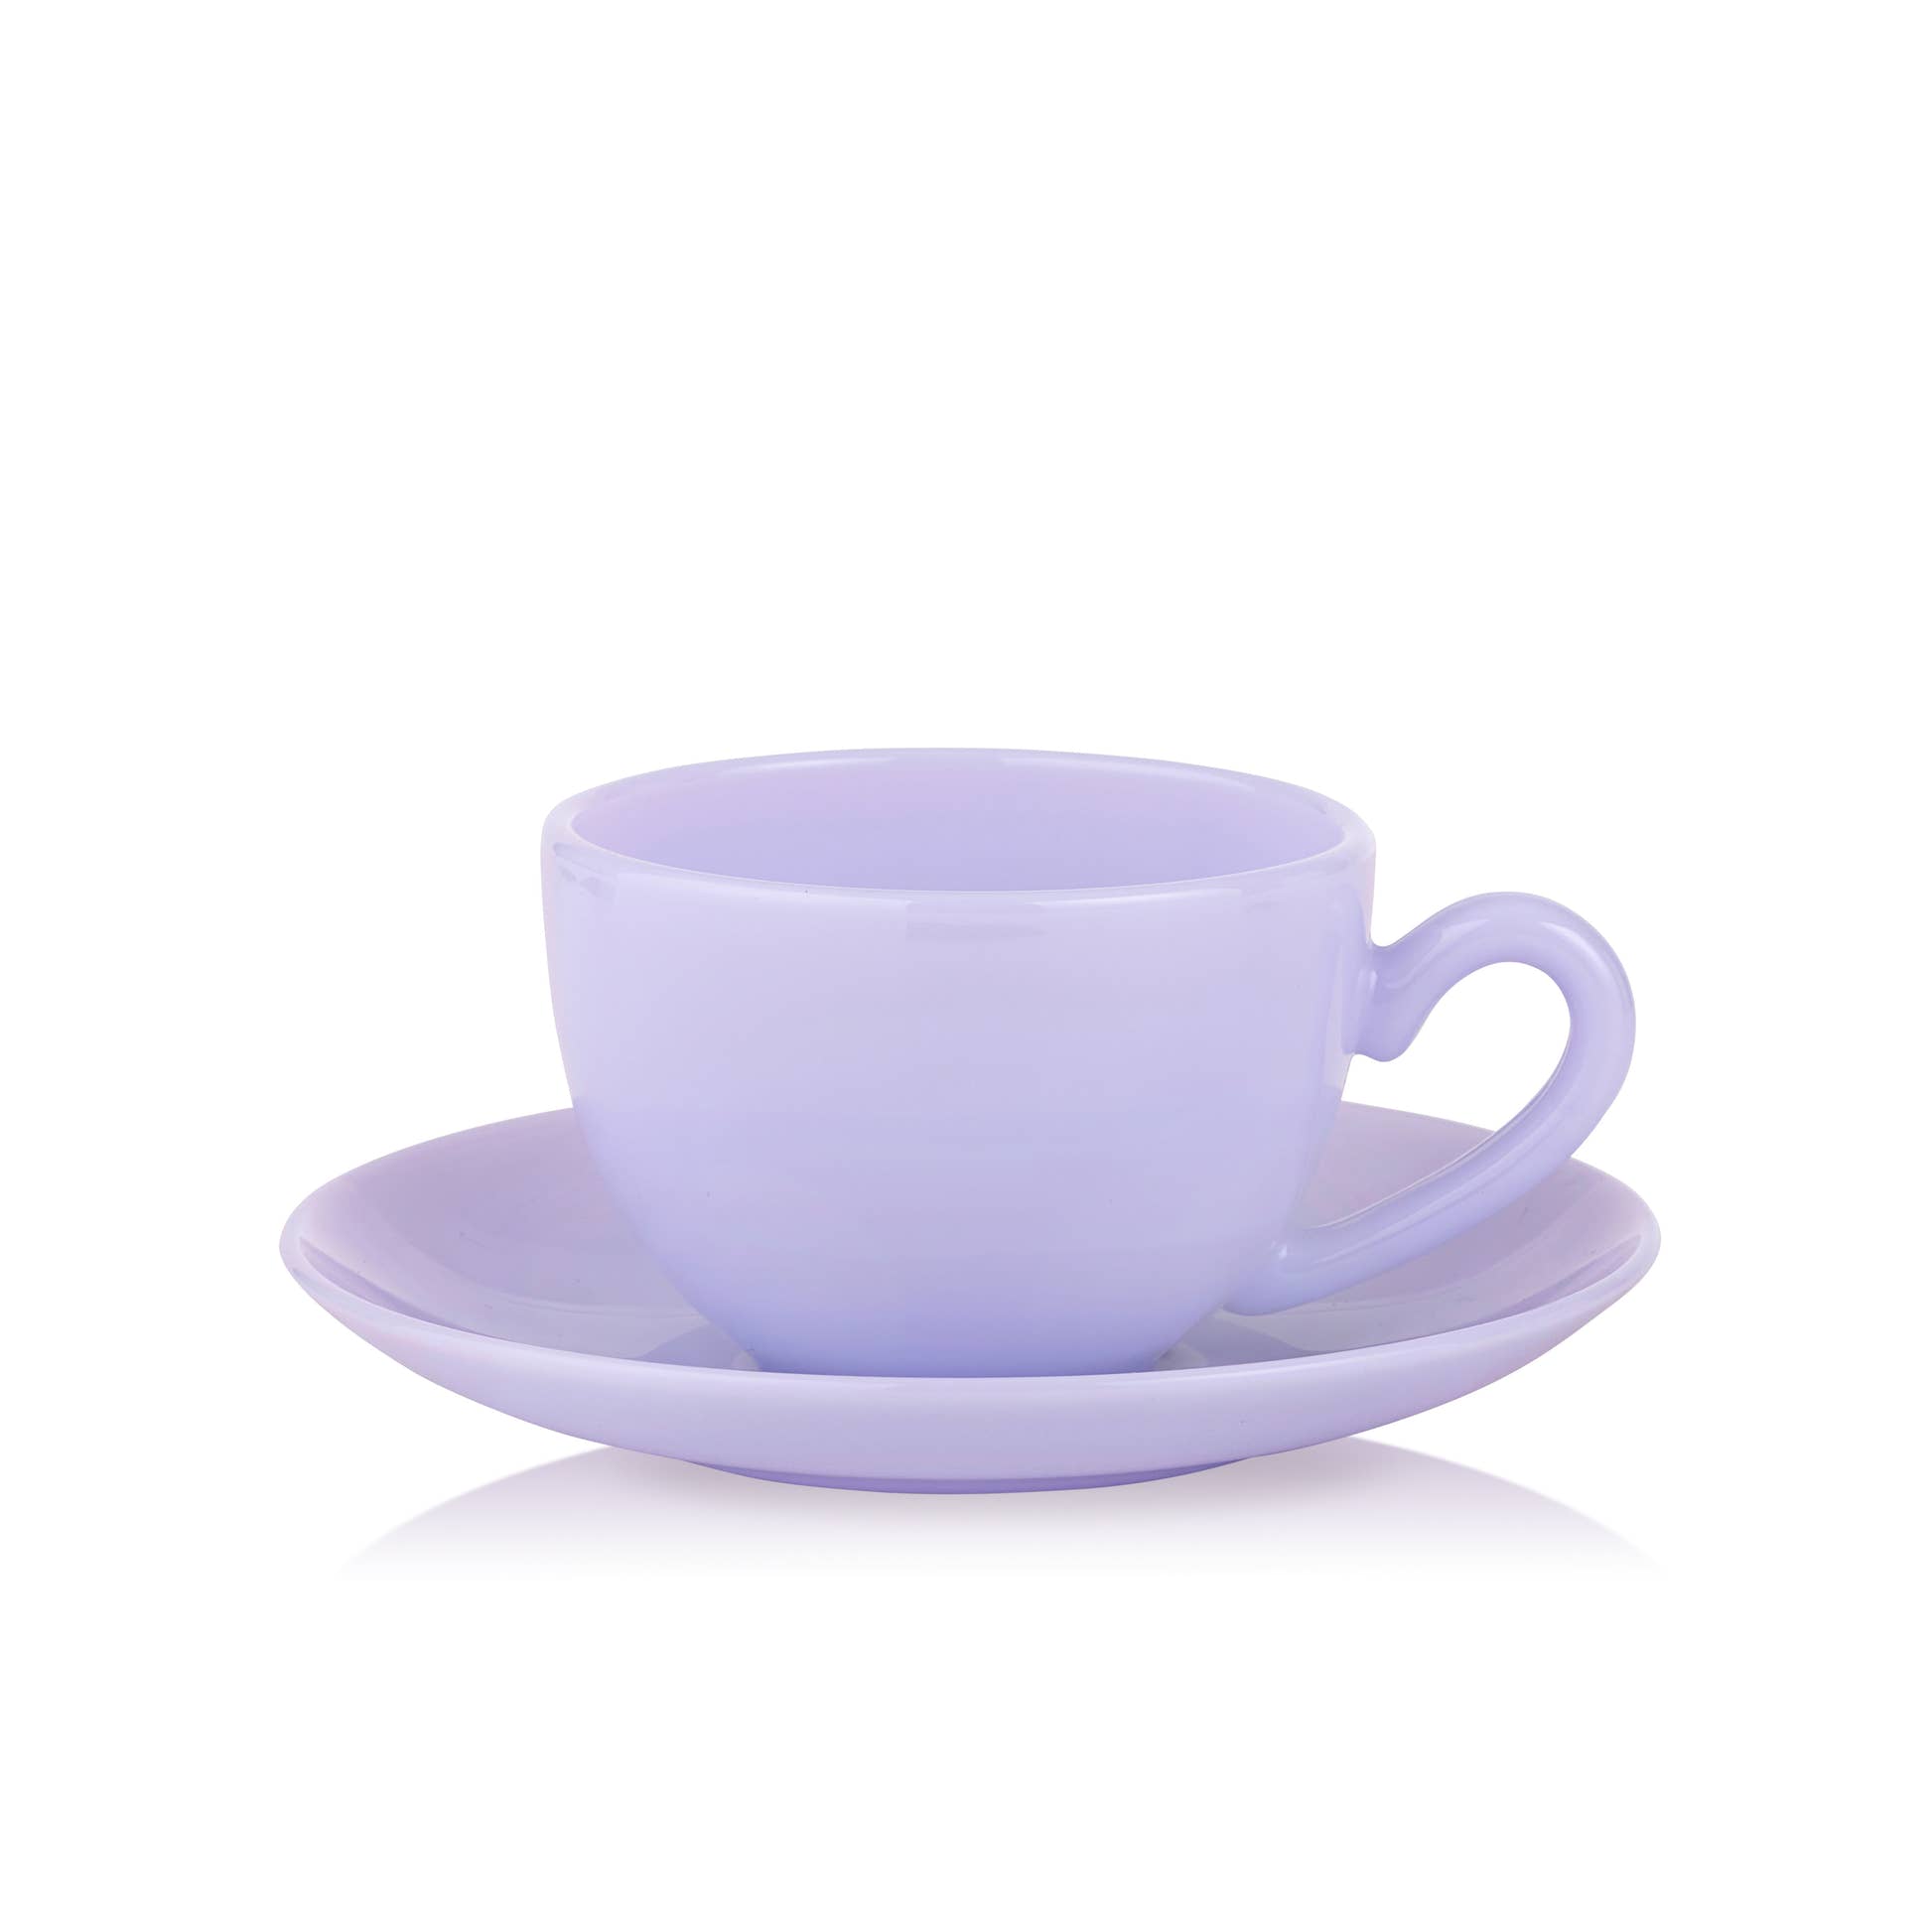 Lucie Kaas Lavender Opal Milk Glass Teacup & Saucer